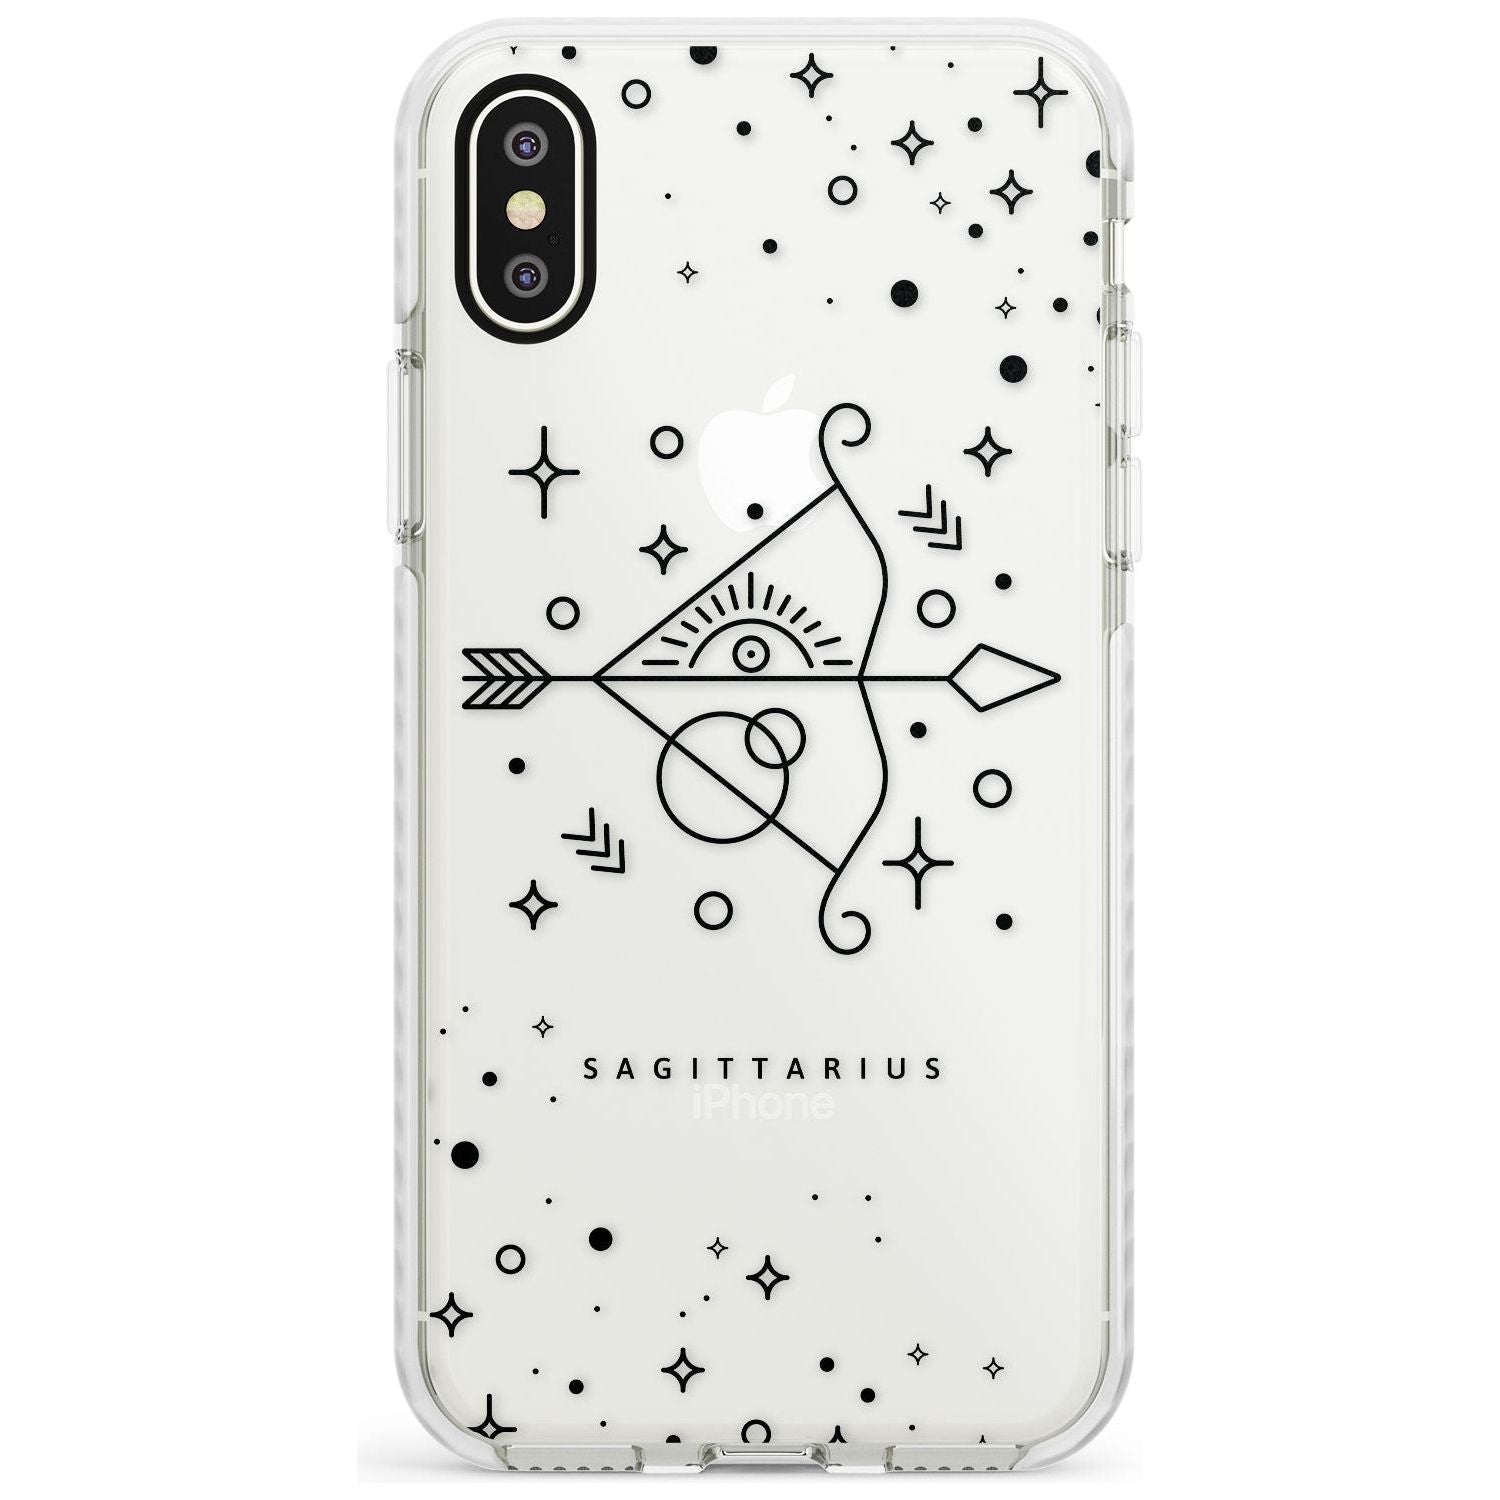 Sagittarius Emblem - Transparent Design Impact Phone Case for iPhone X XS Max XR